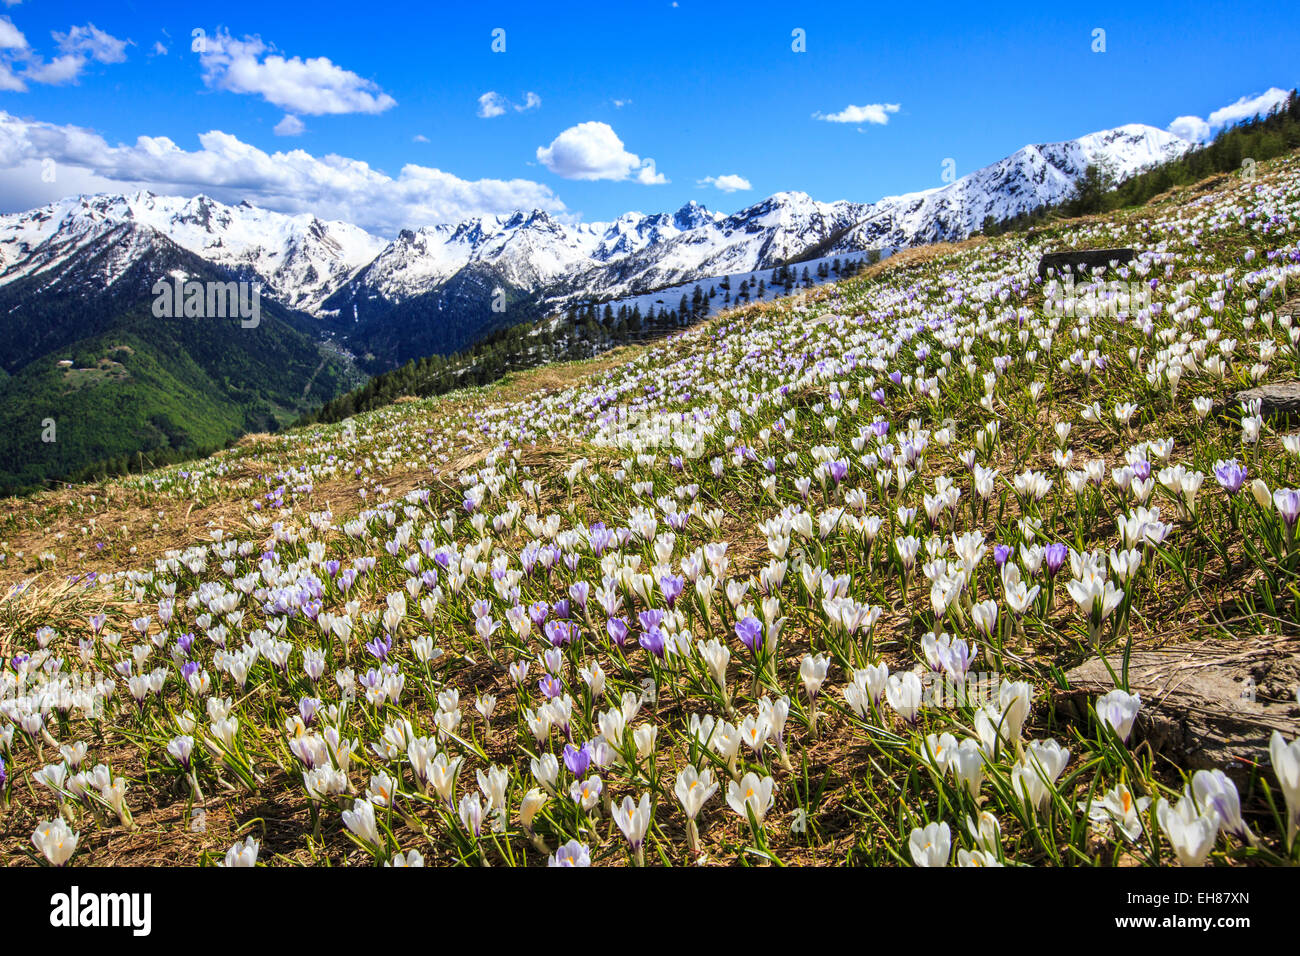 Blooming Crocus sur les pâturages entourant Cima Rosetta dans les Alpes Orobie, Lombardie, Italie, Europe Banque D'Images